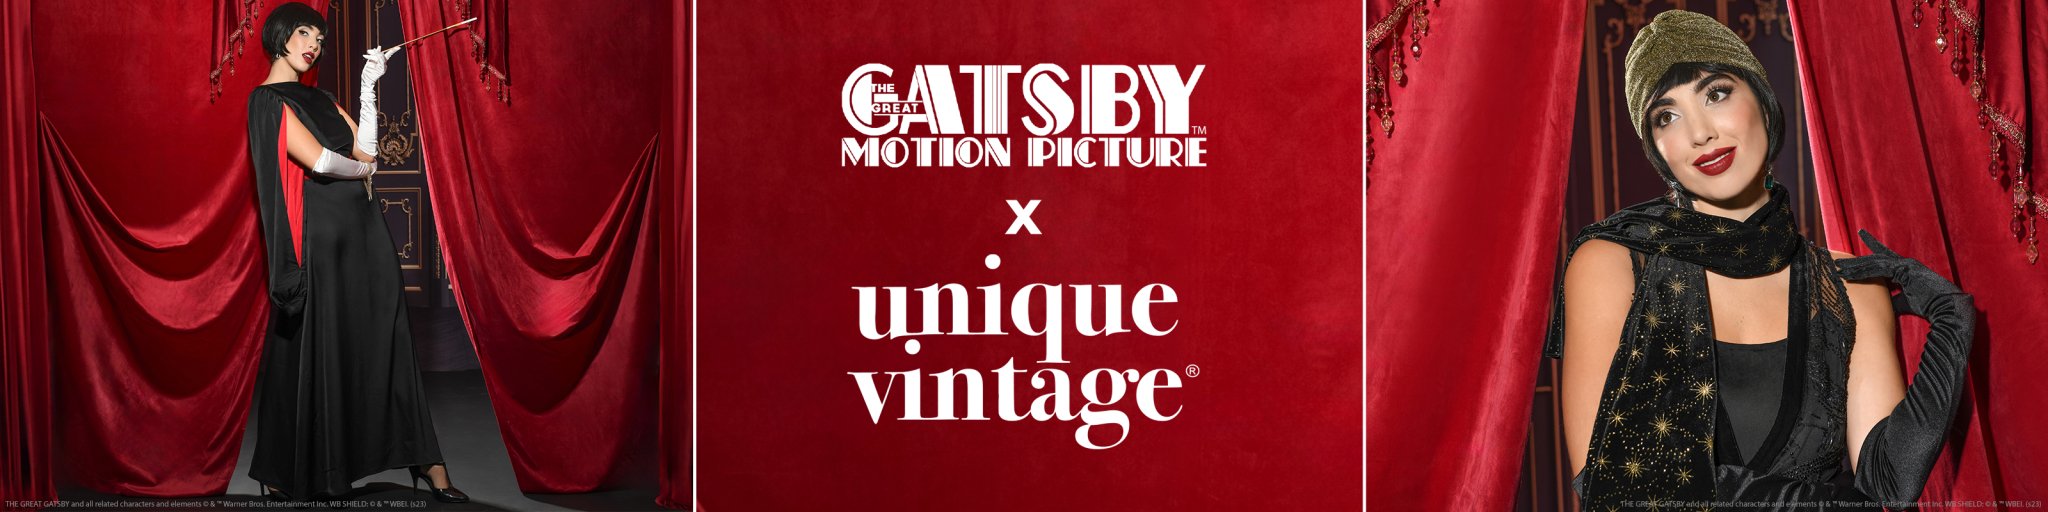 Retro & Vintage Great Gatsby x Unique Vintage